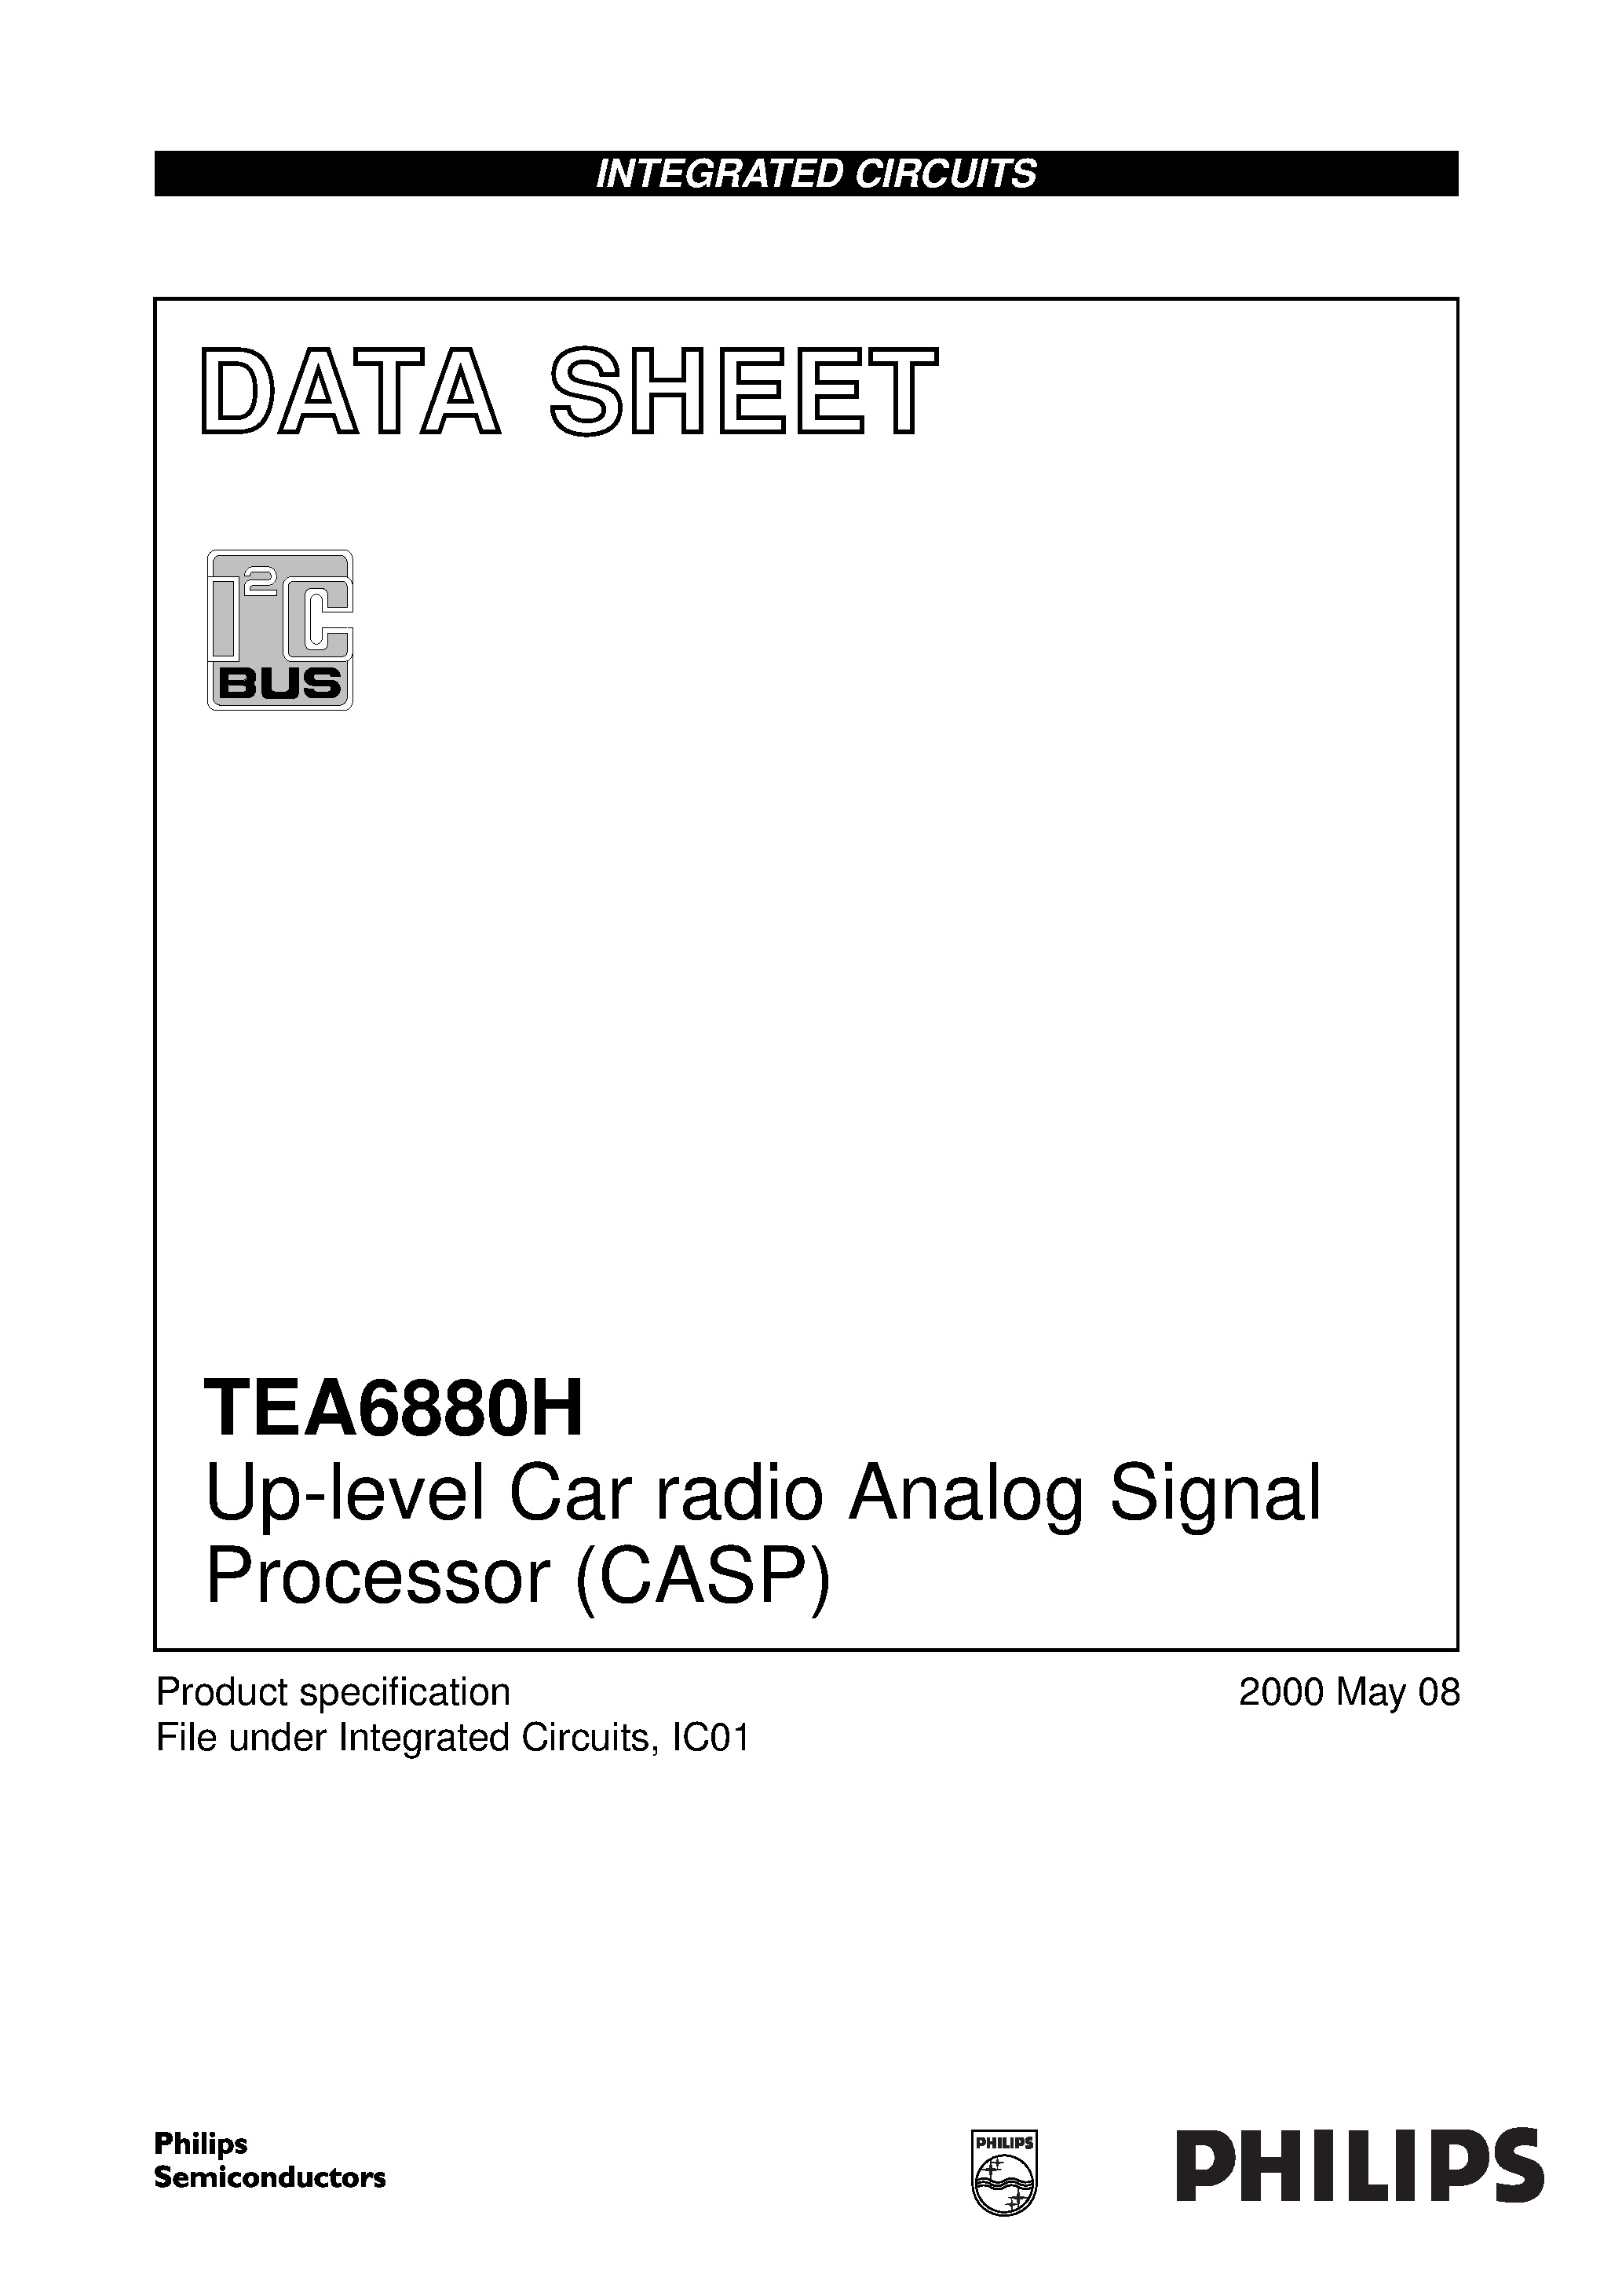 Даташит TEA6880 - Up-level Car radio Analog Signal Processor CASP страница 1